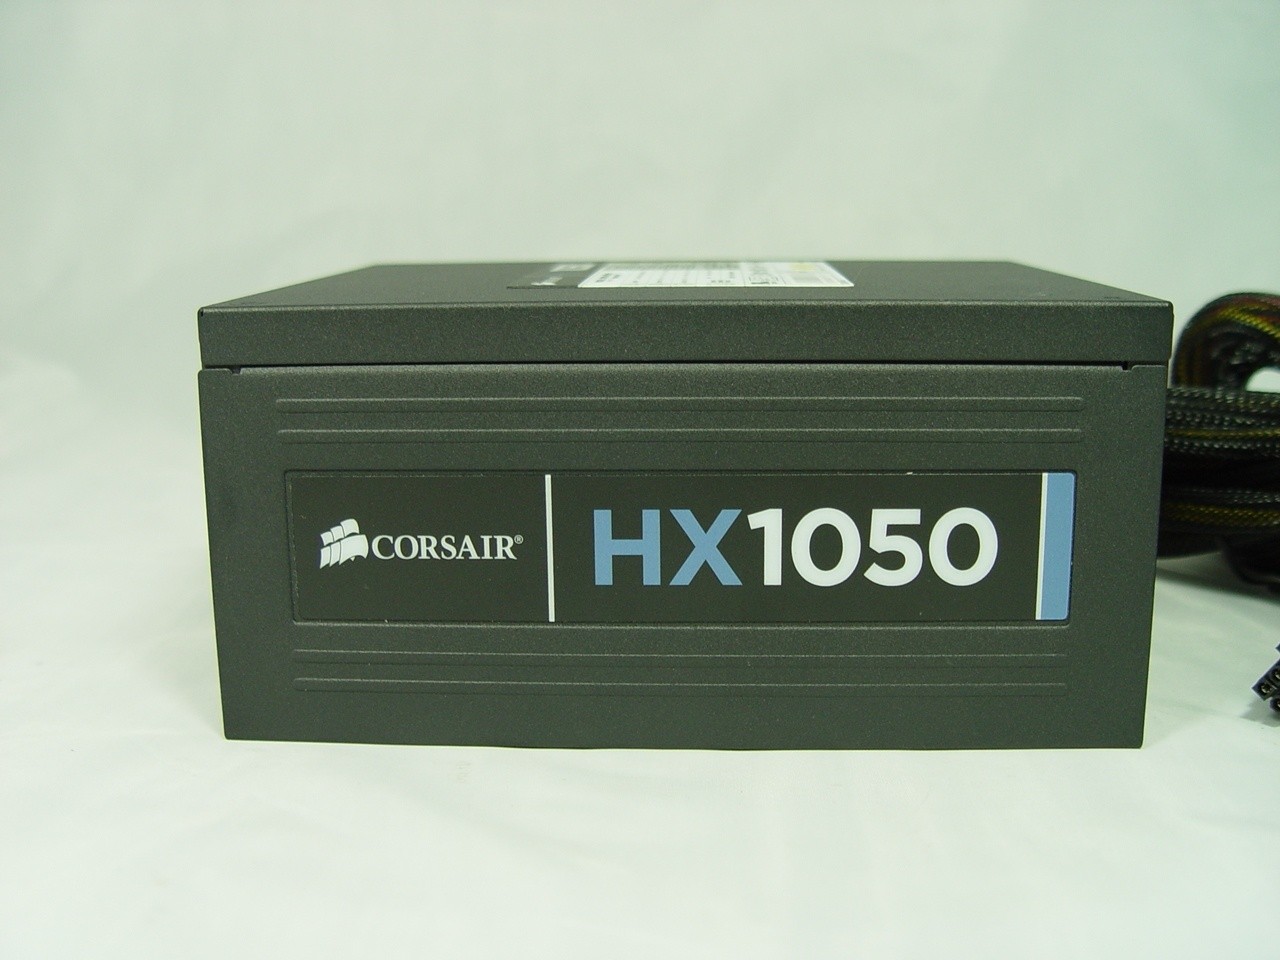 Corsair HX1050 1050 Watt Power Supply Review